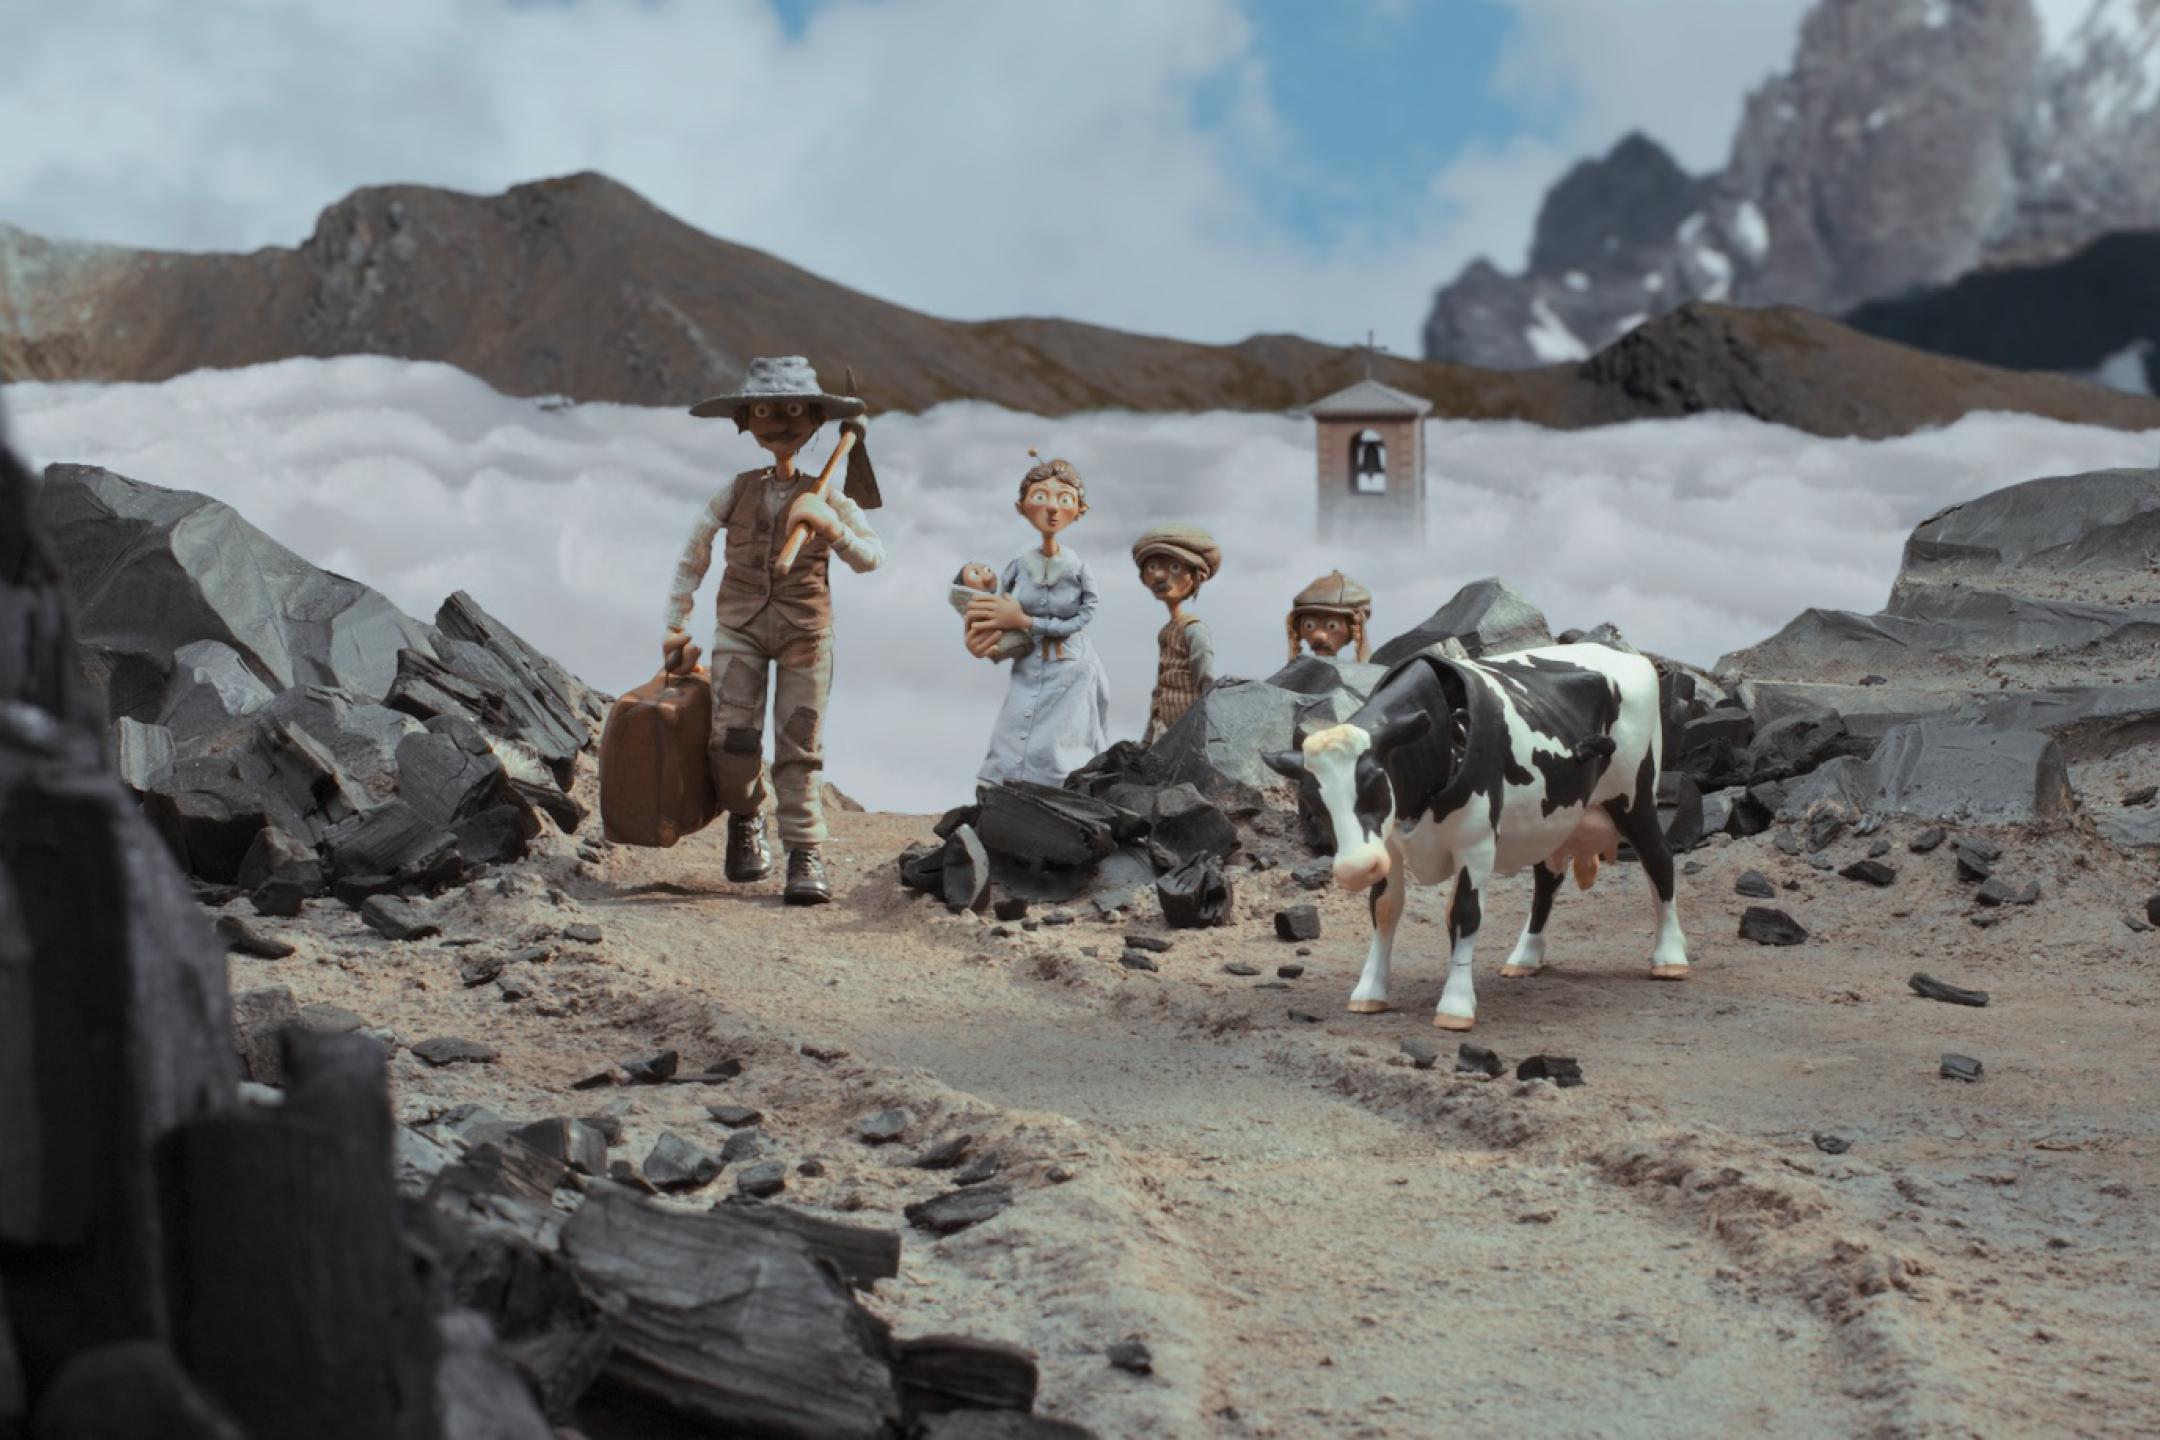 Ein Animationsfilmstill. Vier Puppenfiguren und eine Kuh stehen in einer steinigen Berglandschaft, hinter ihnen ist eine Schlucht voller Wolken, nur ein Kirchturm schaut heraus. Die Vaterfigur läuft mit Spitzhacke und Koffer in den Händen auf die Kamera zu, die Mutter mit Baby im Arm und zwei Jungen schauen ihm hinterher